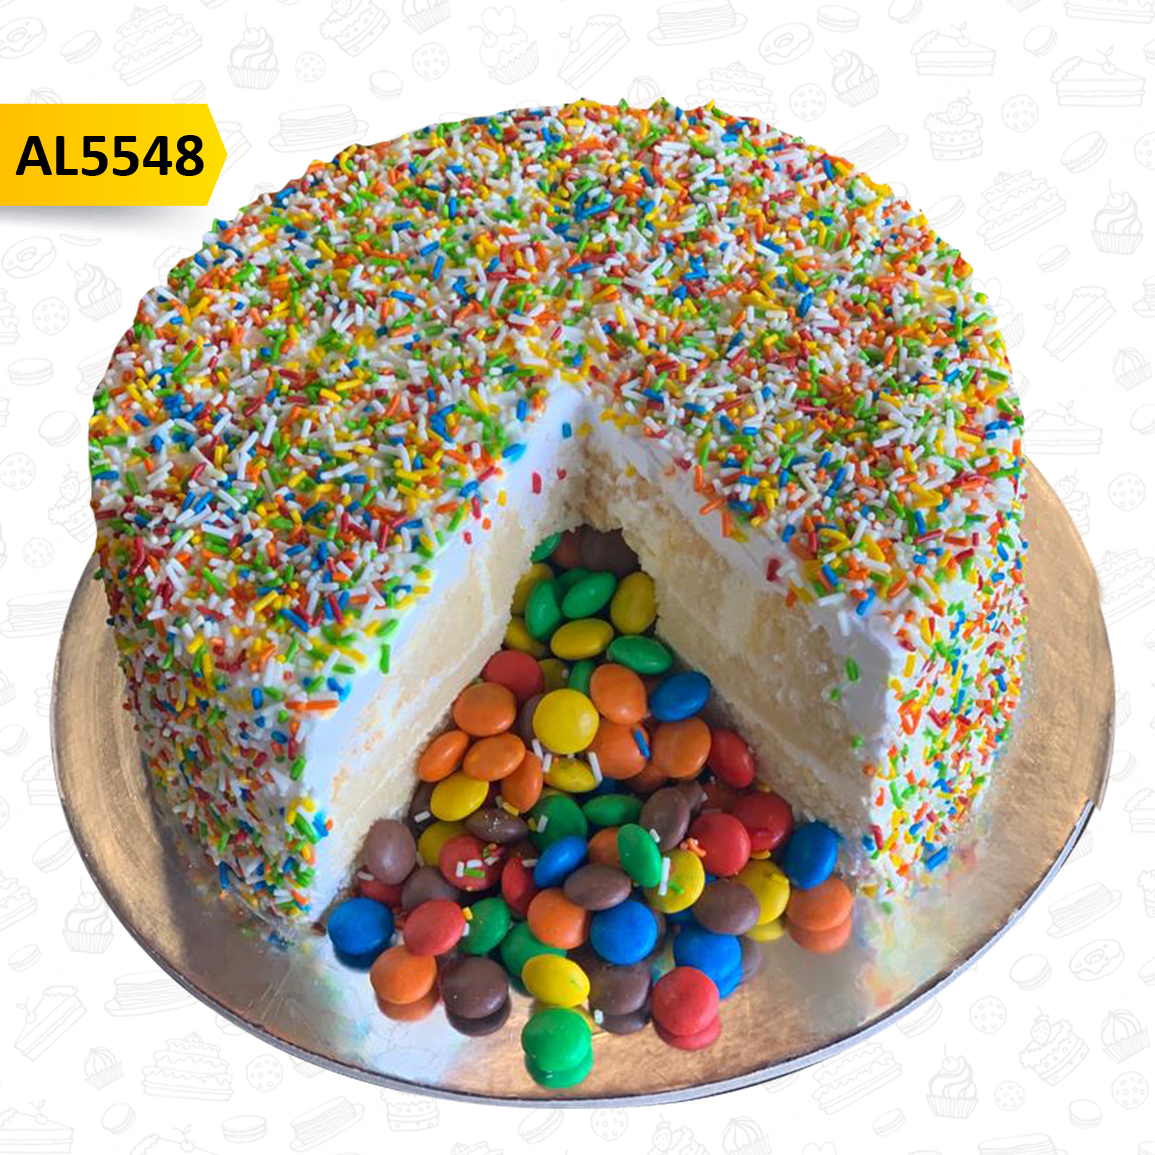 Share 55+ 6 wonders cake ammas latest - awesomeenglish.edu.vn